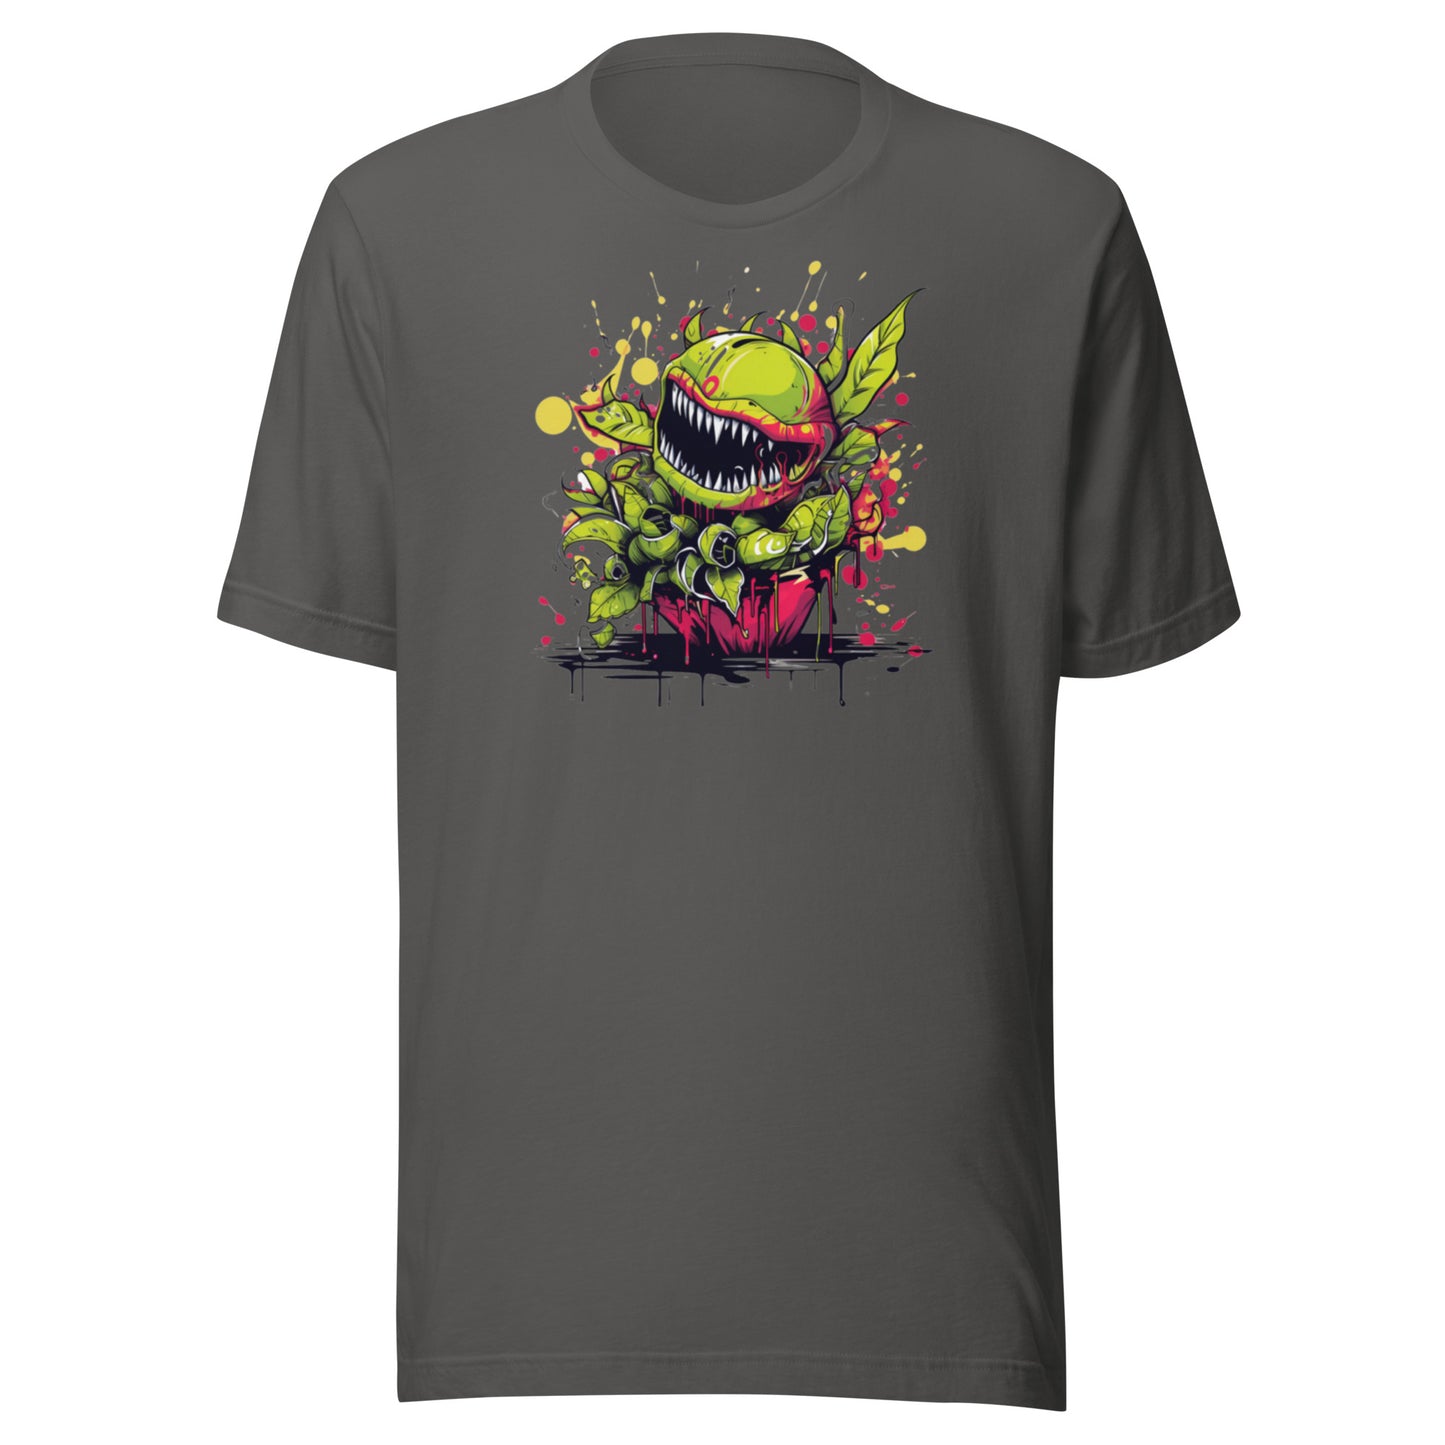 Little Shop of Horror Shirt, Movie shirt, Halloween Shirt, Horror Tee, Graphic t shirt